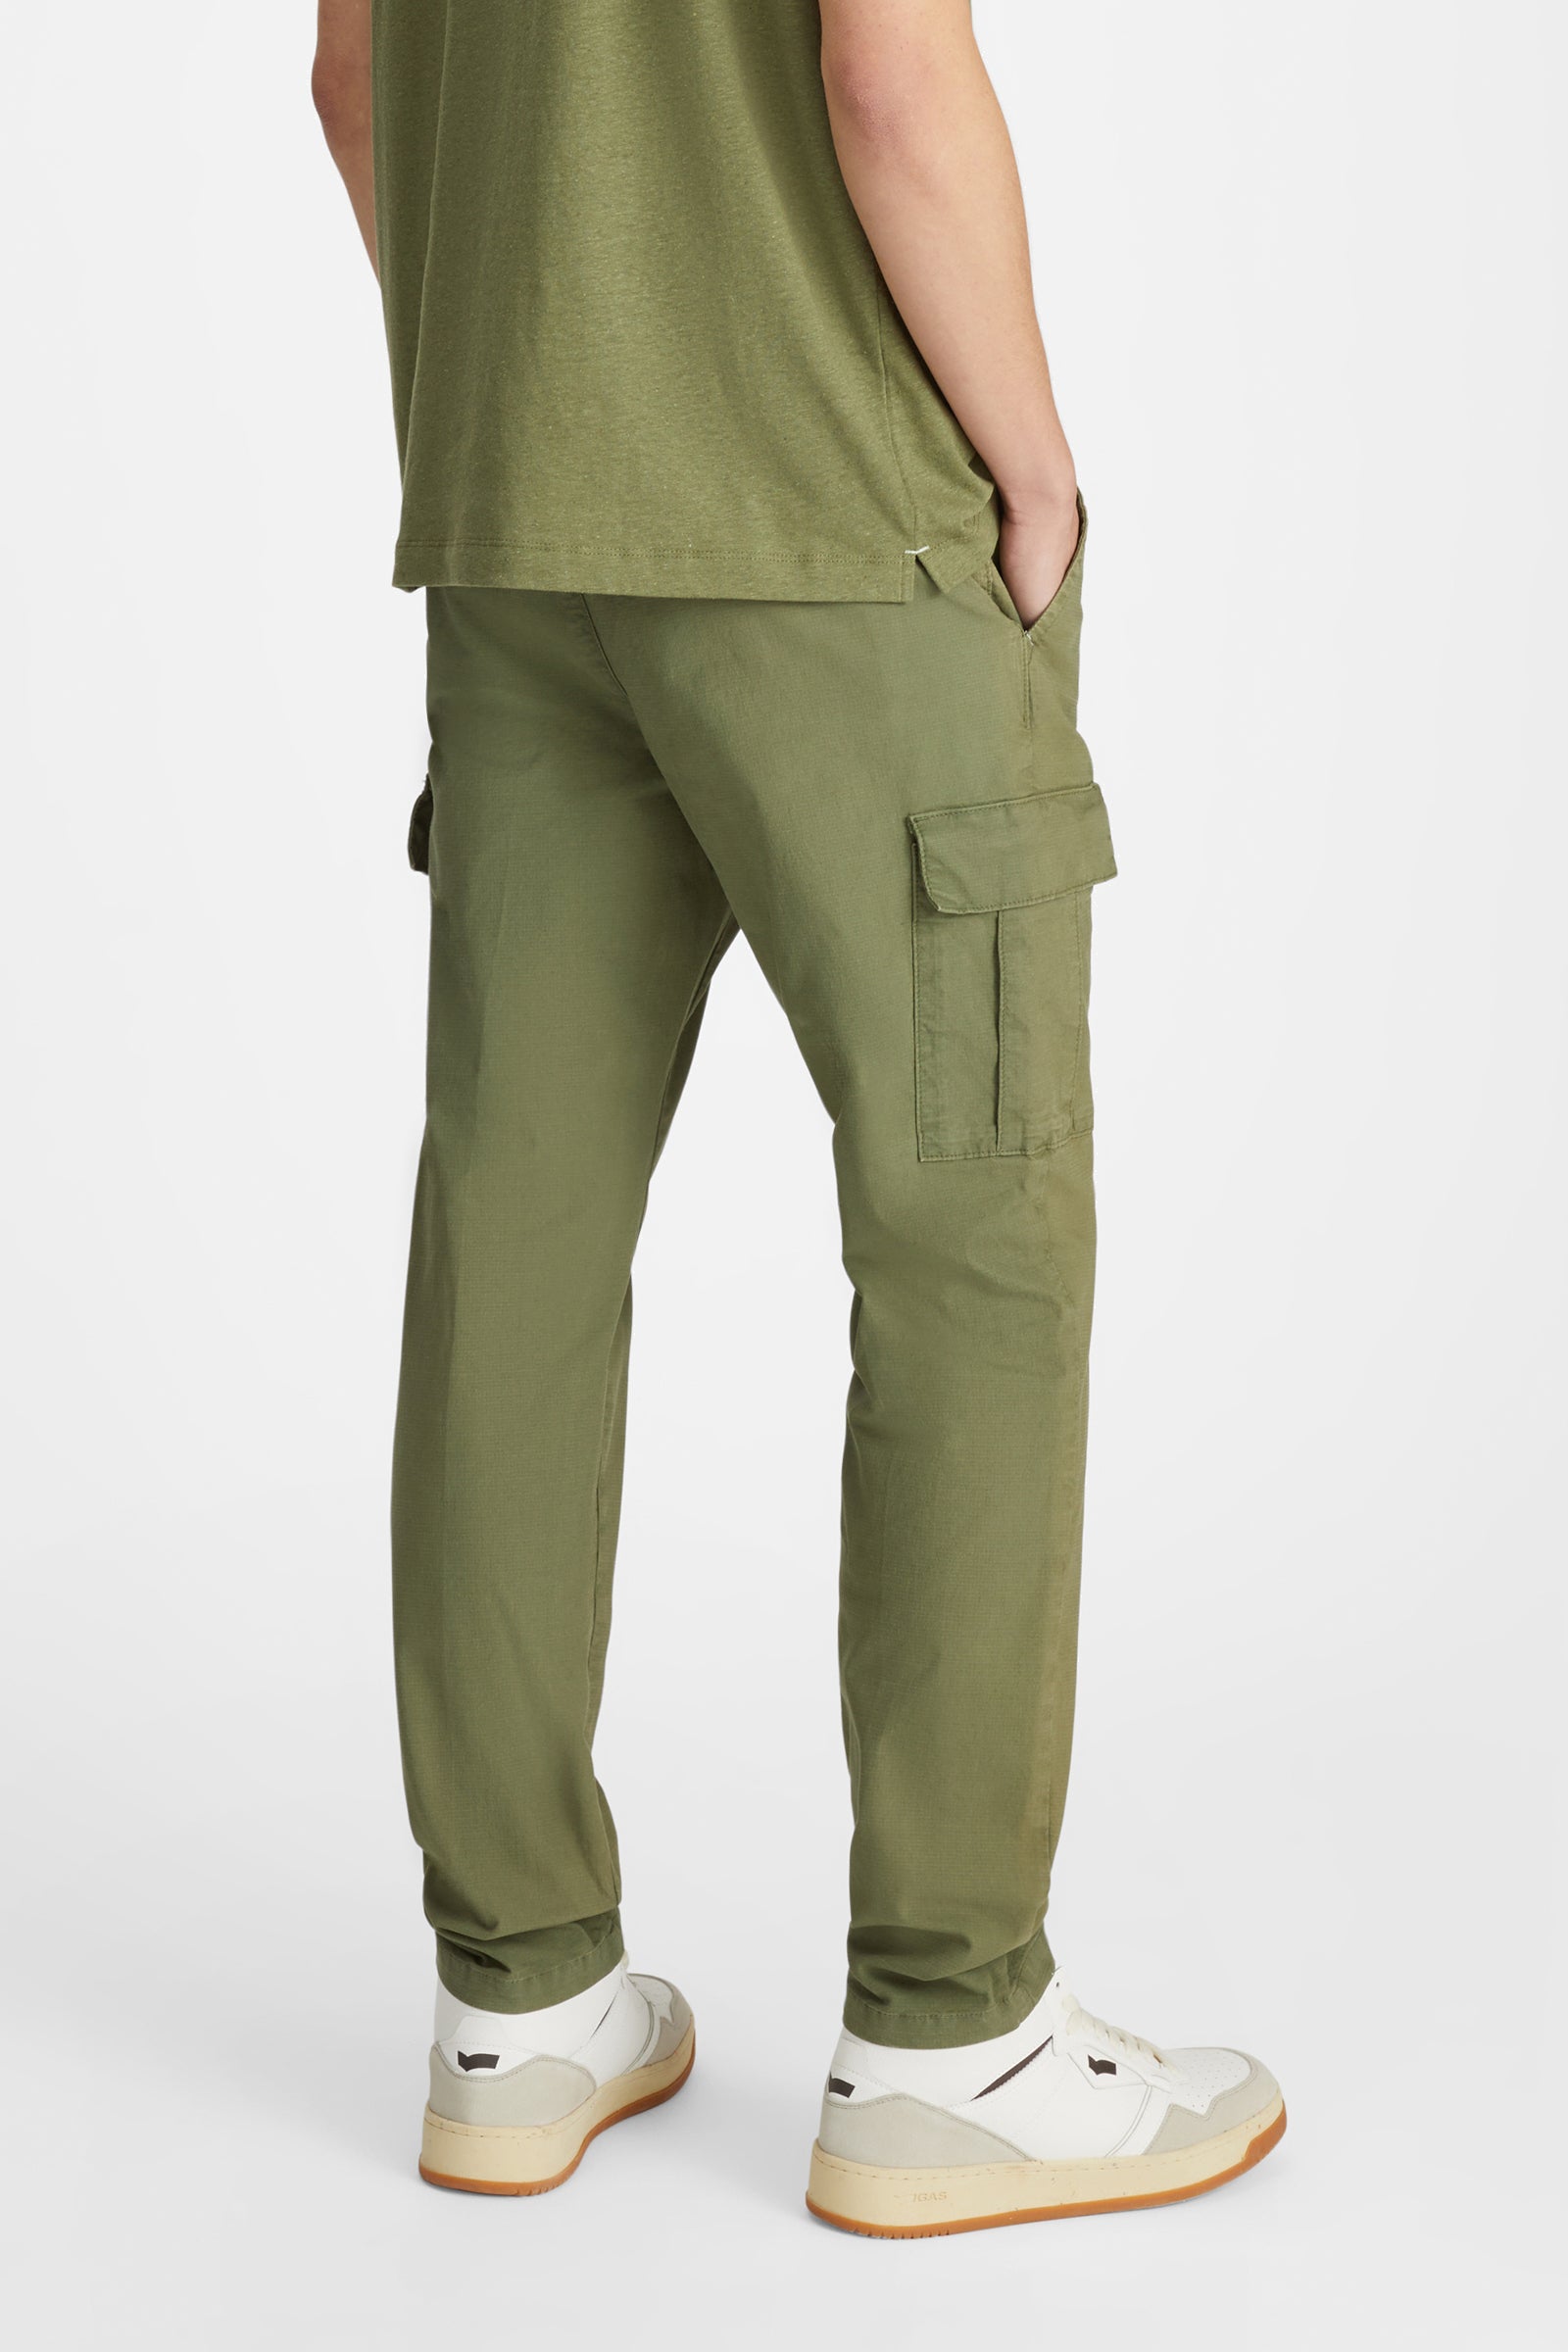 Thibo' Pks Trousers in Four Leafclover Hosen GAS   